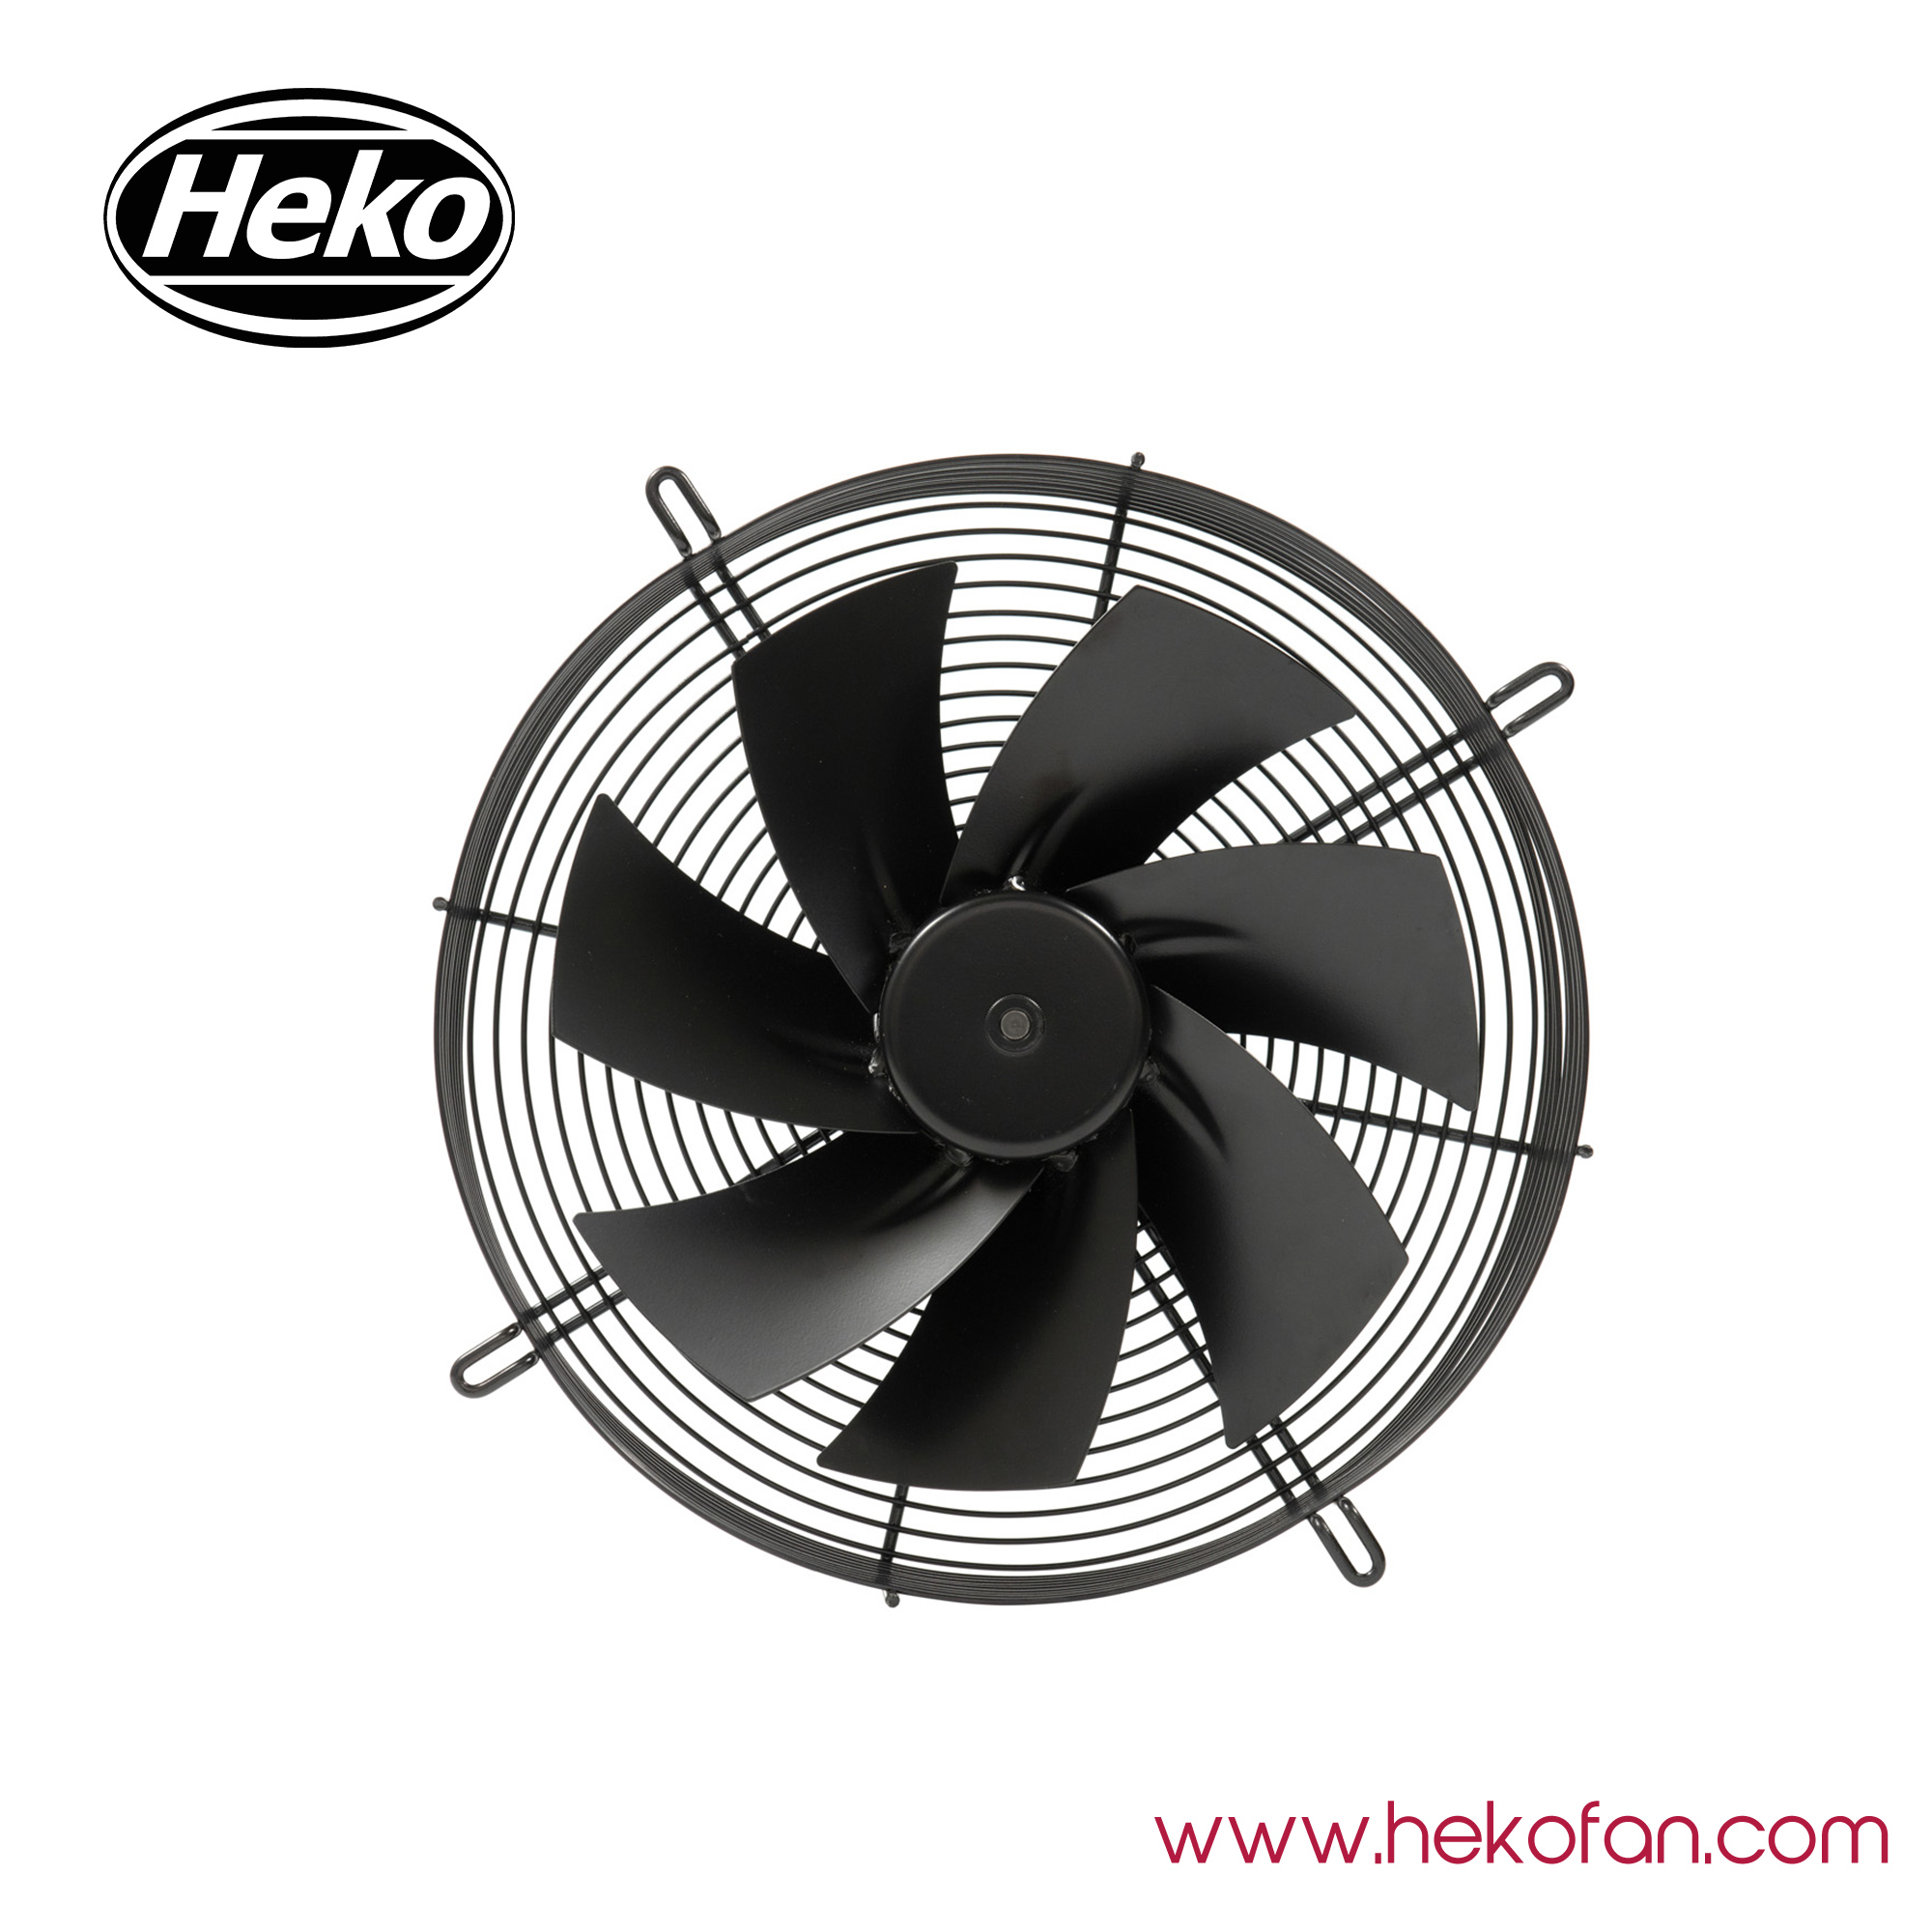 HEKO EC300mm Steel Coated In Black Industrial Axial Fan